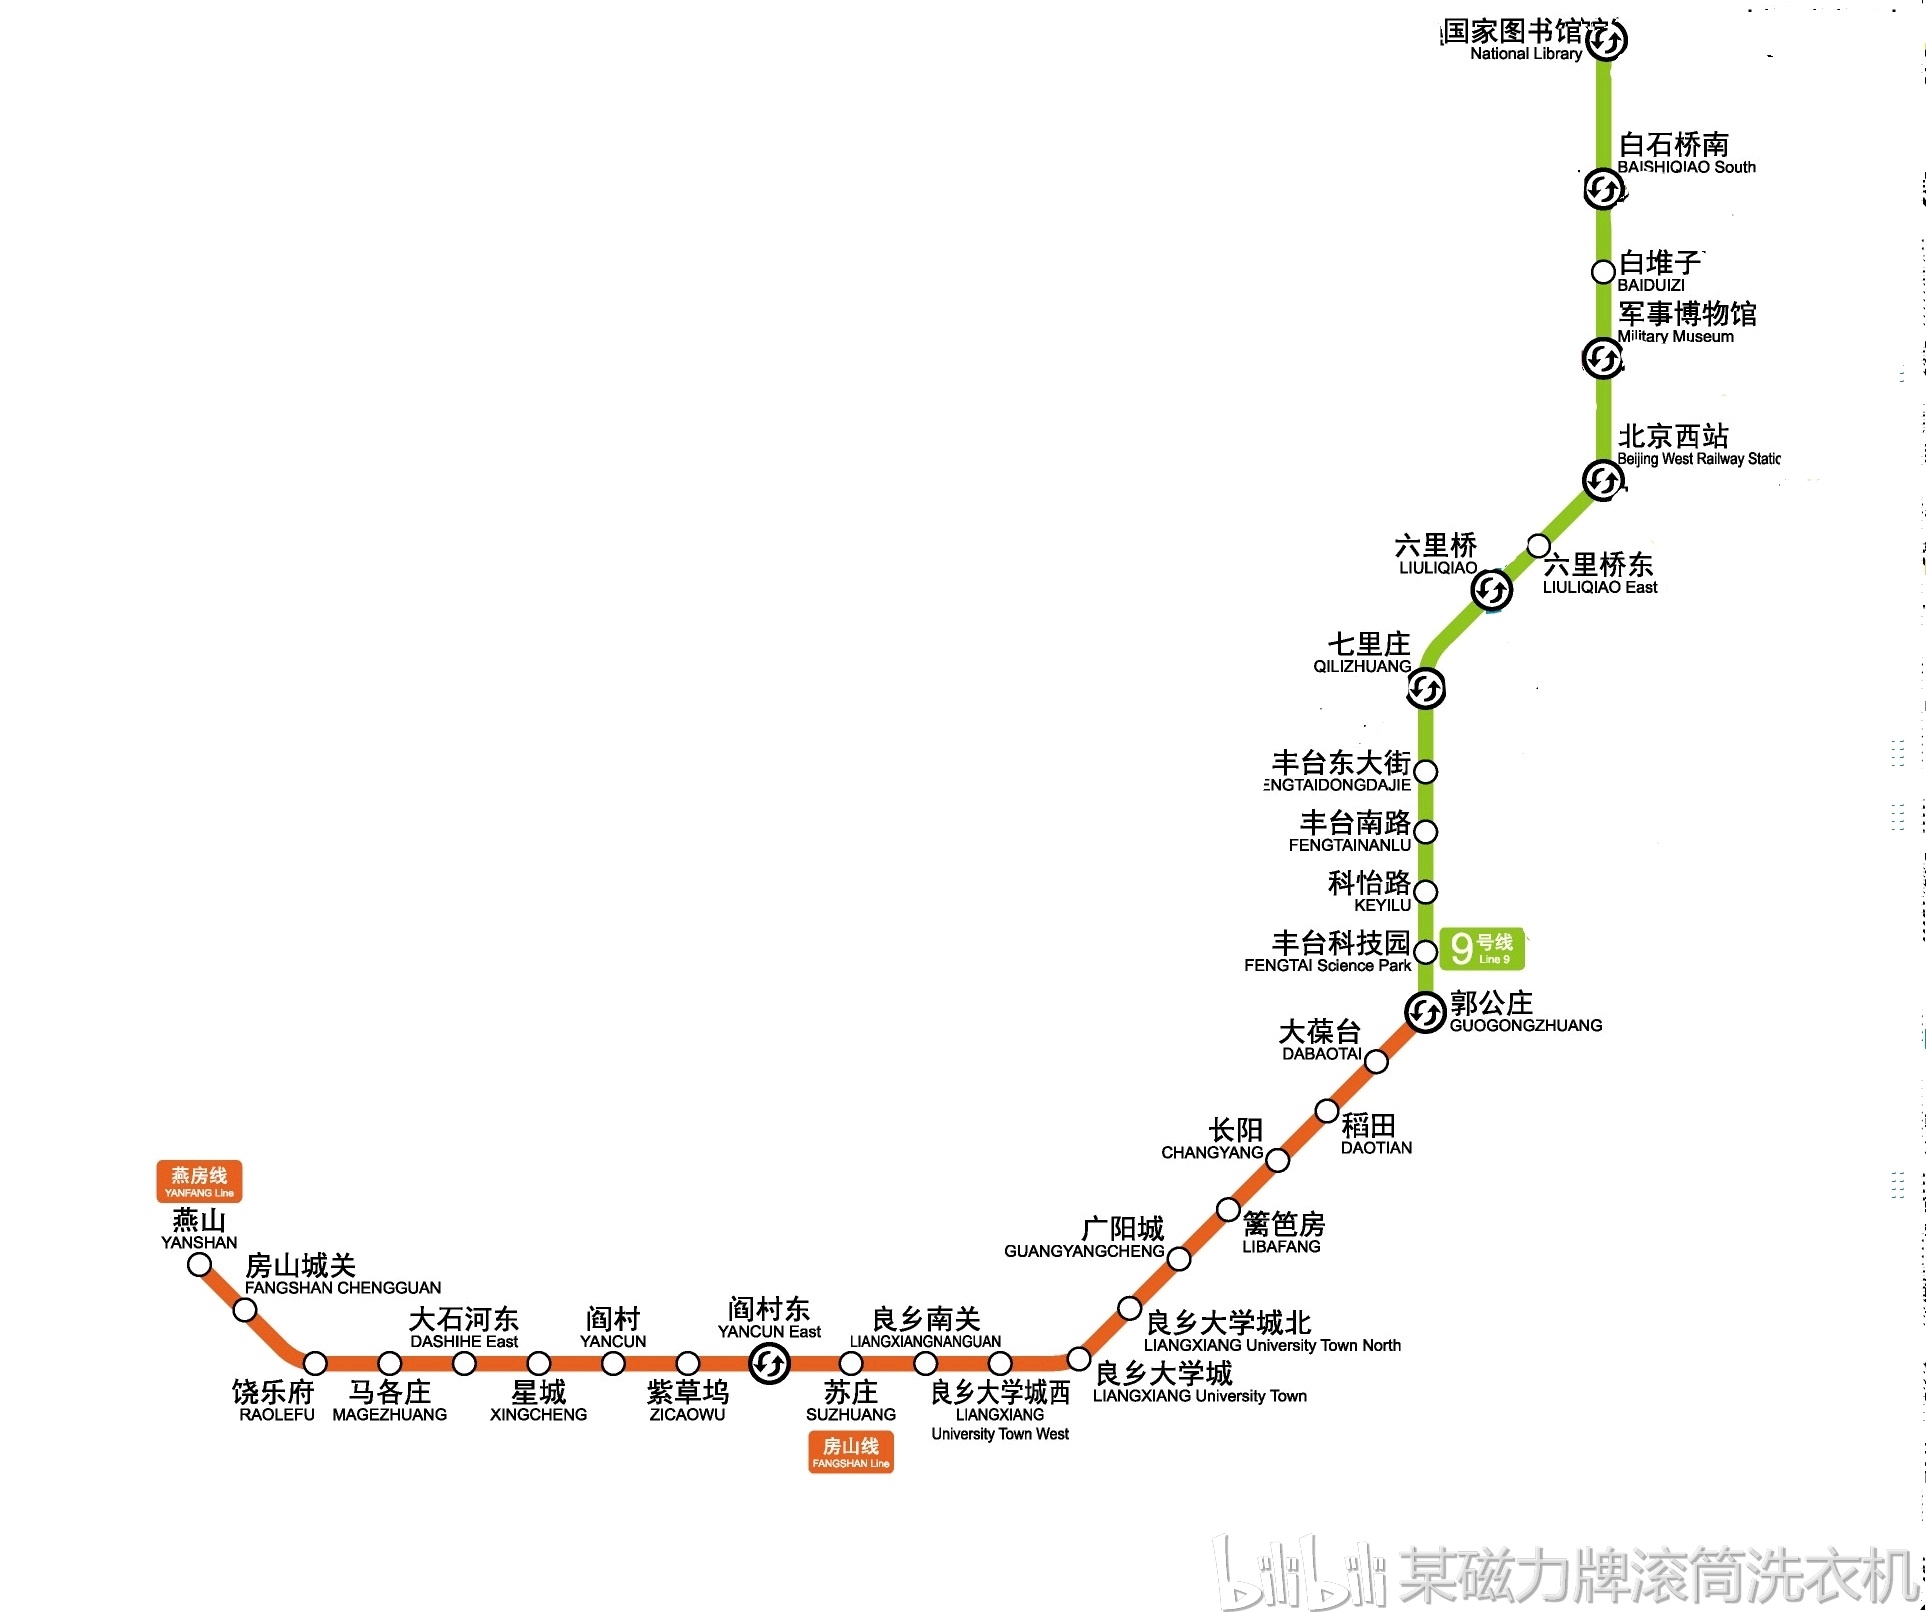 北京燕房线今日开通 中国首条自主研发“无人驾驶”线路正式运营